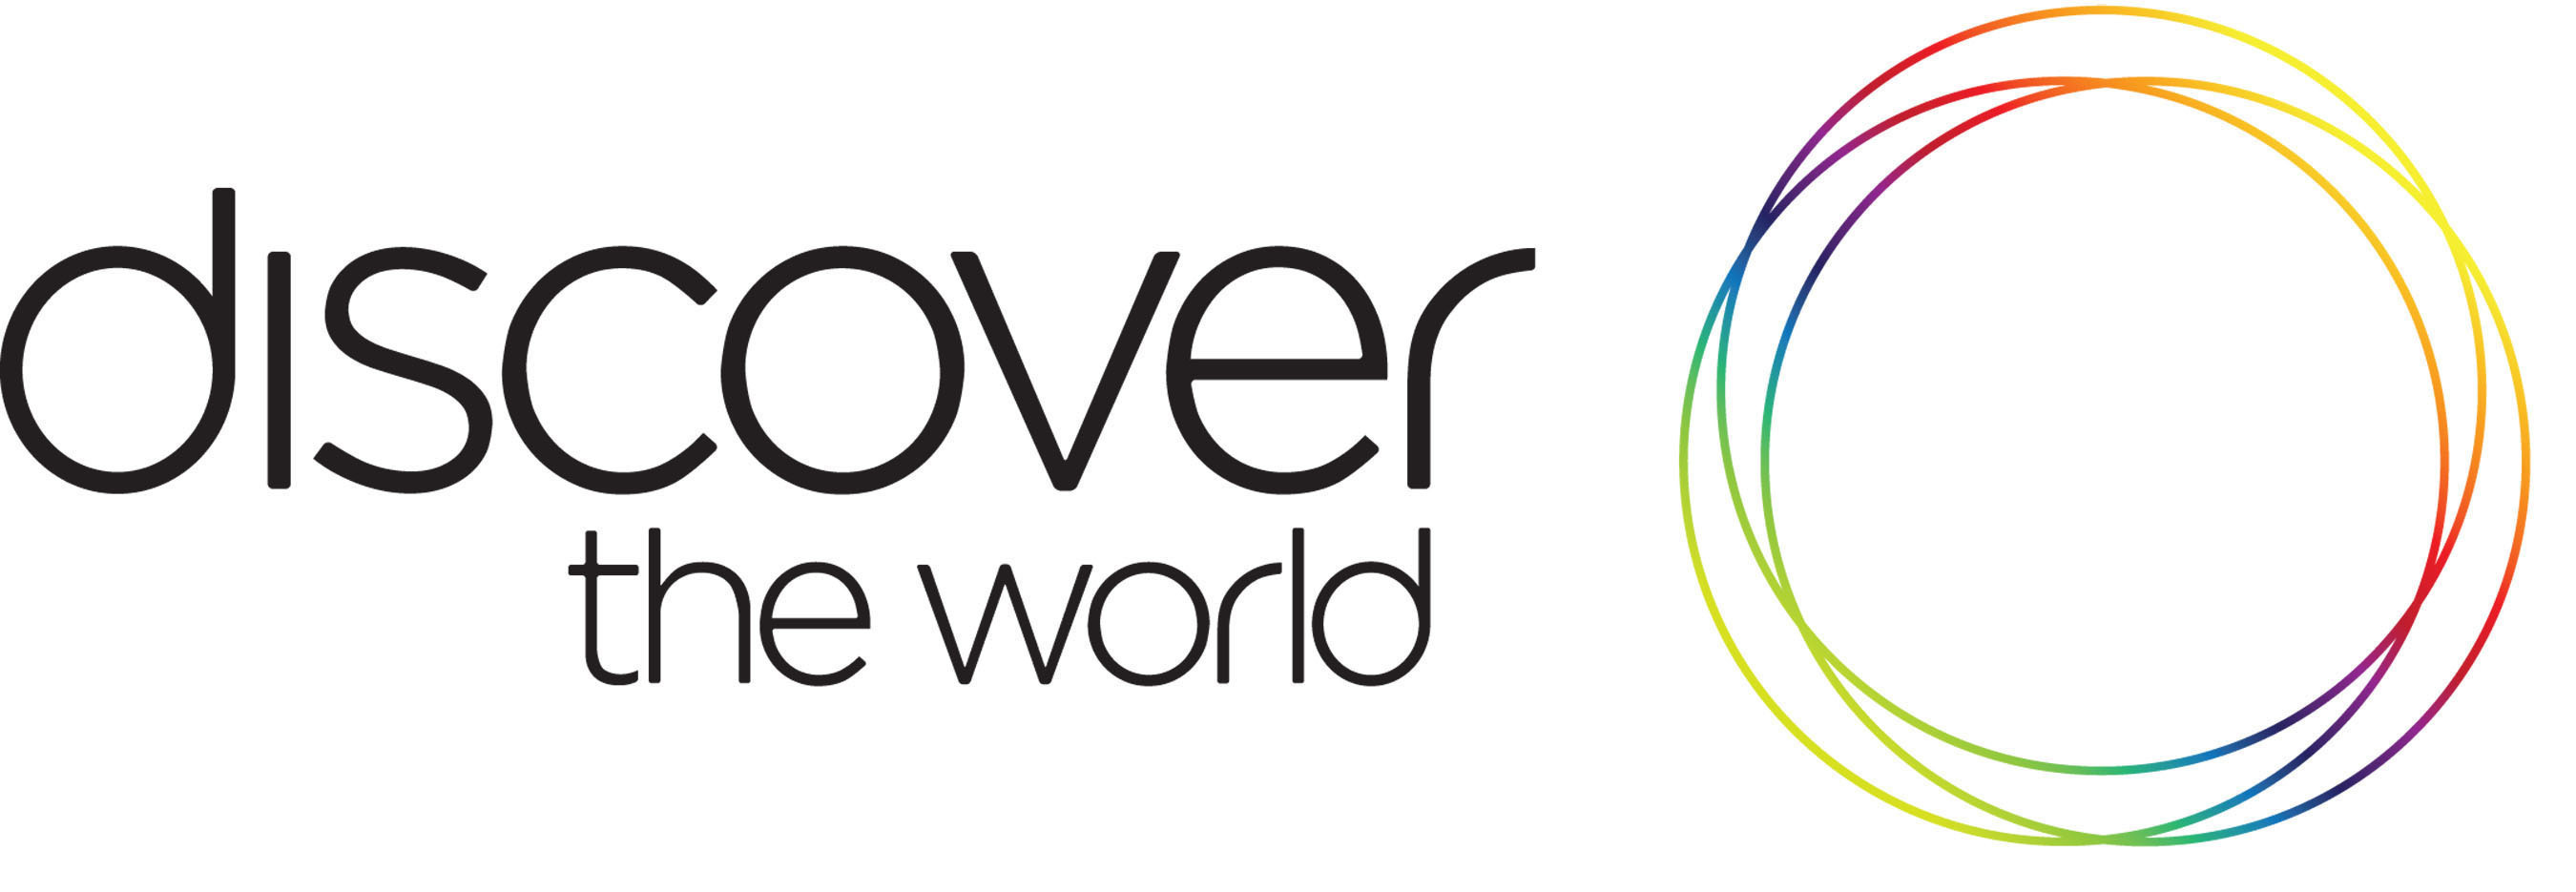 Discover the World's logo. (PRNewsFoto/Discover the World Marketing) (PRNewsFoto/) (PRNewsFoto/)